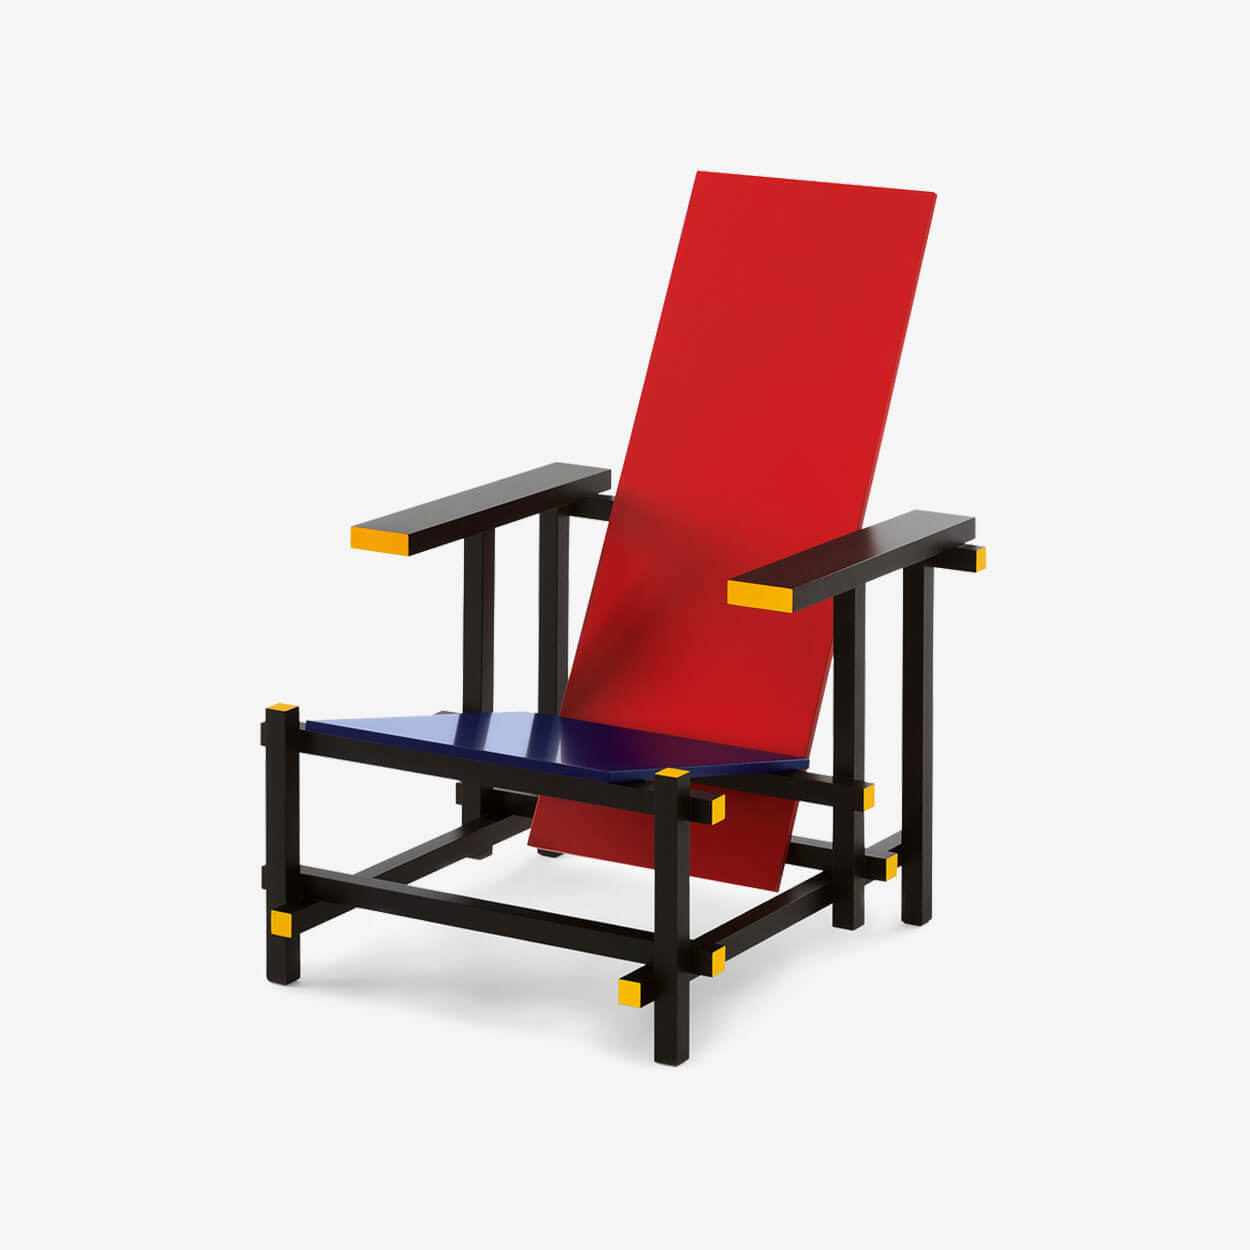 Rood-blauwe stoel (Cassina) | Rietveld